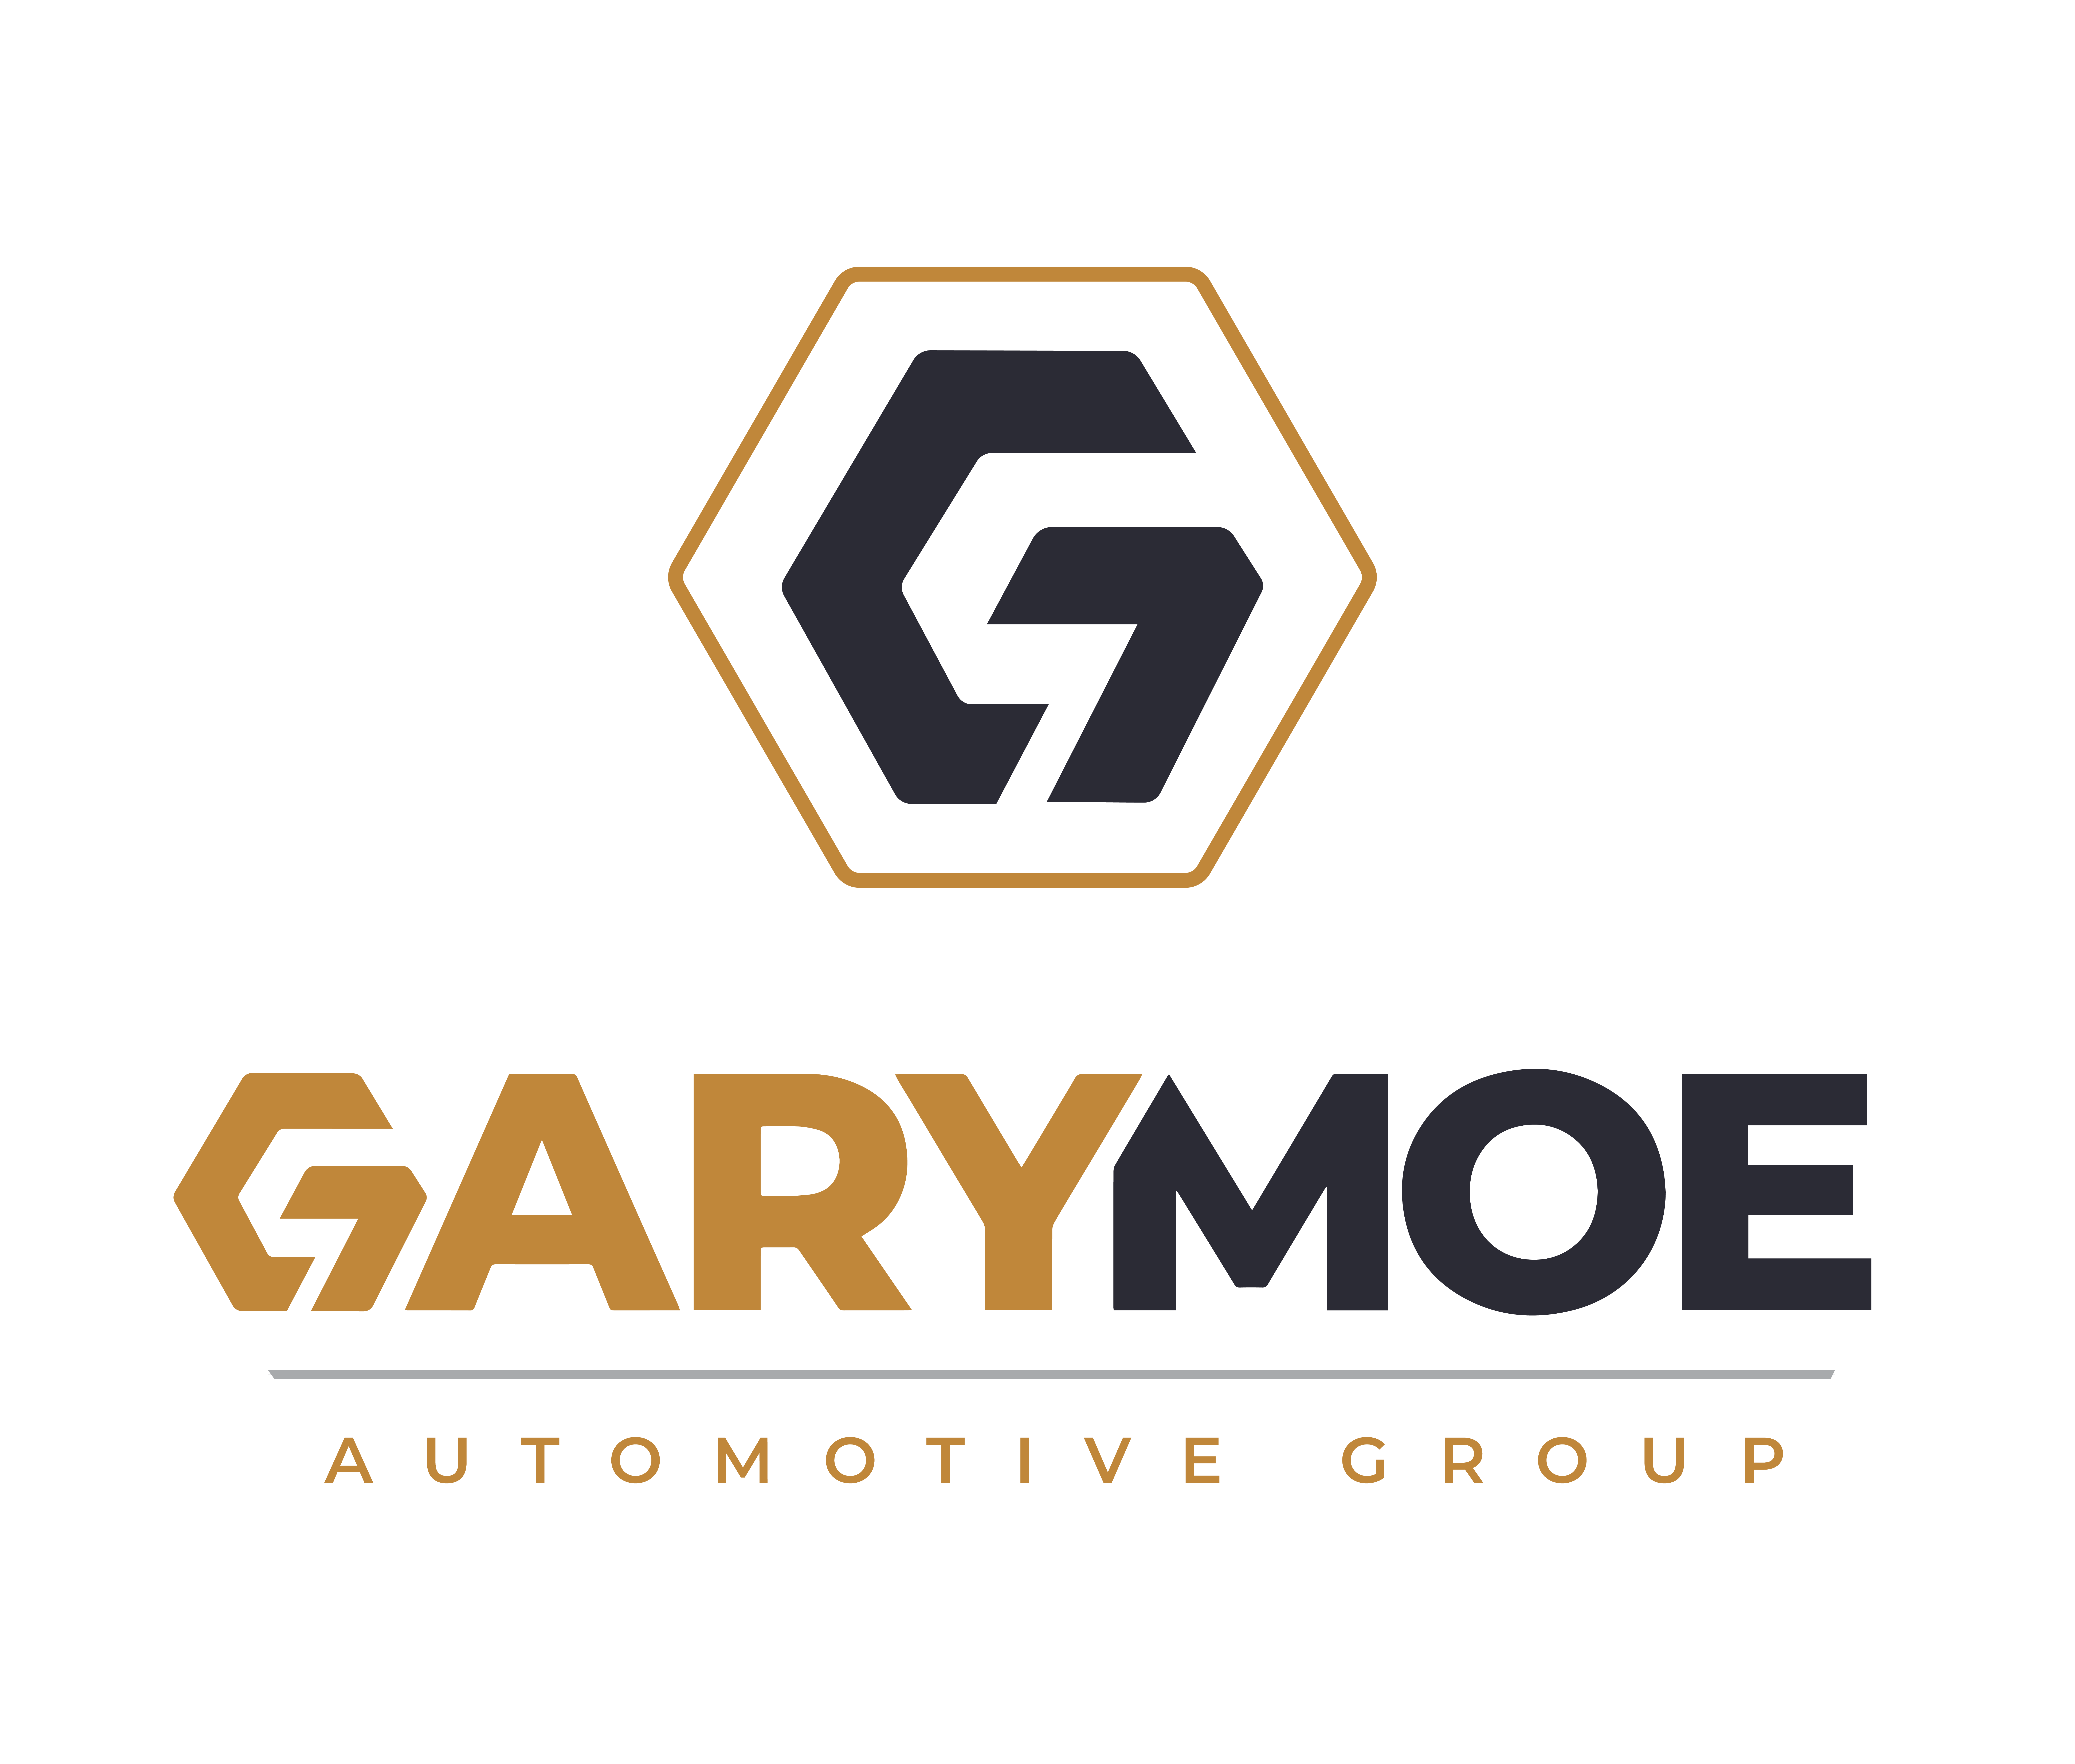 Gary Moe Automotive Group